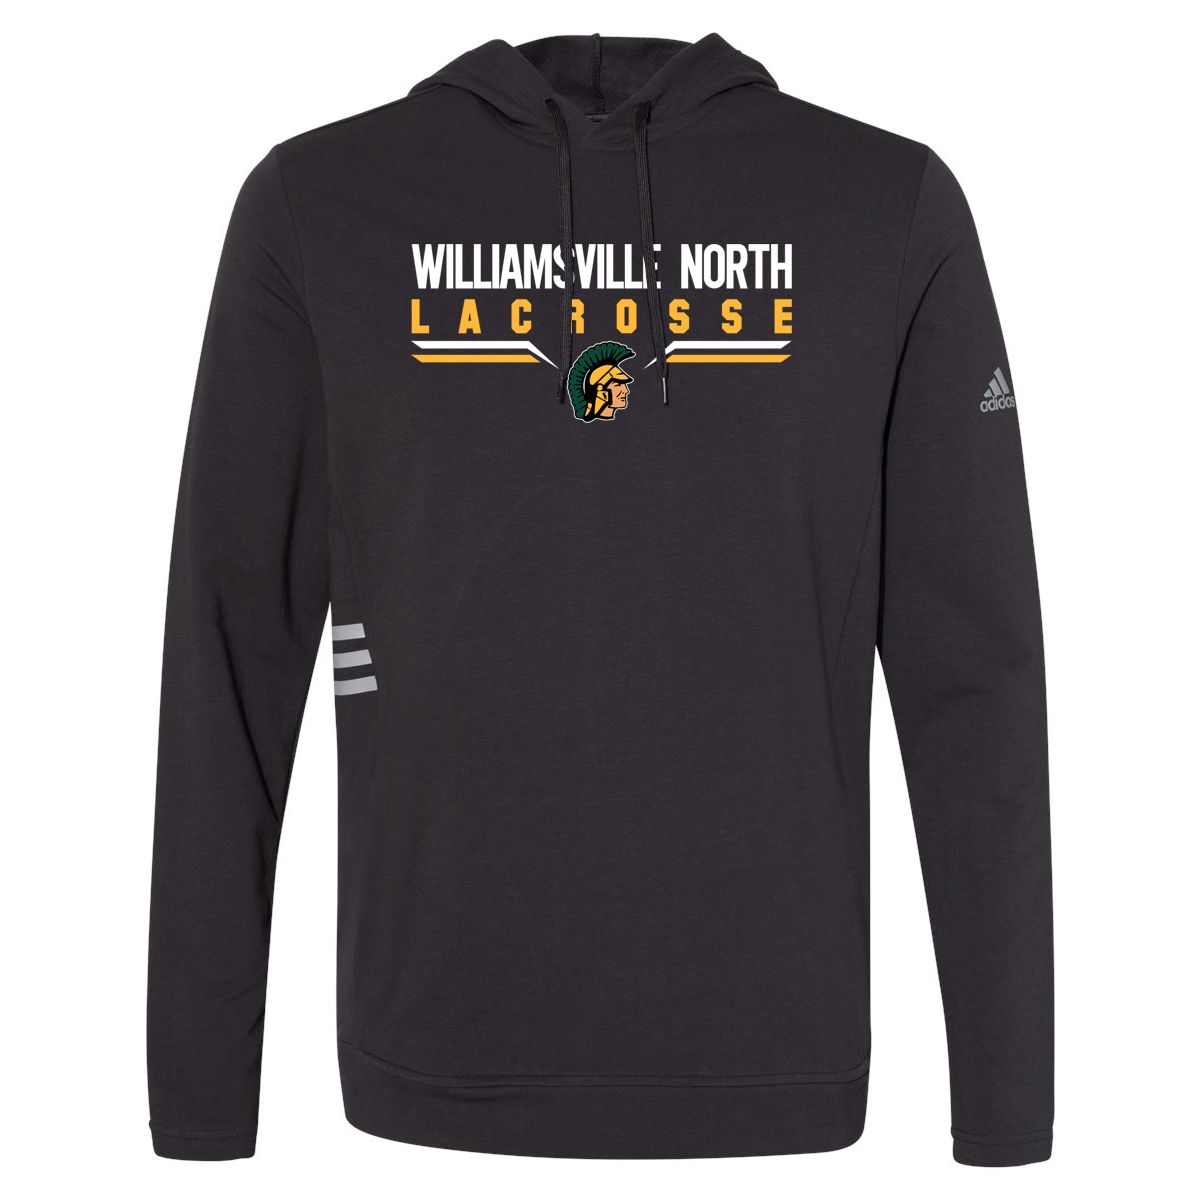 Williamsville North Lacrosse Adidas Sweatshirt